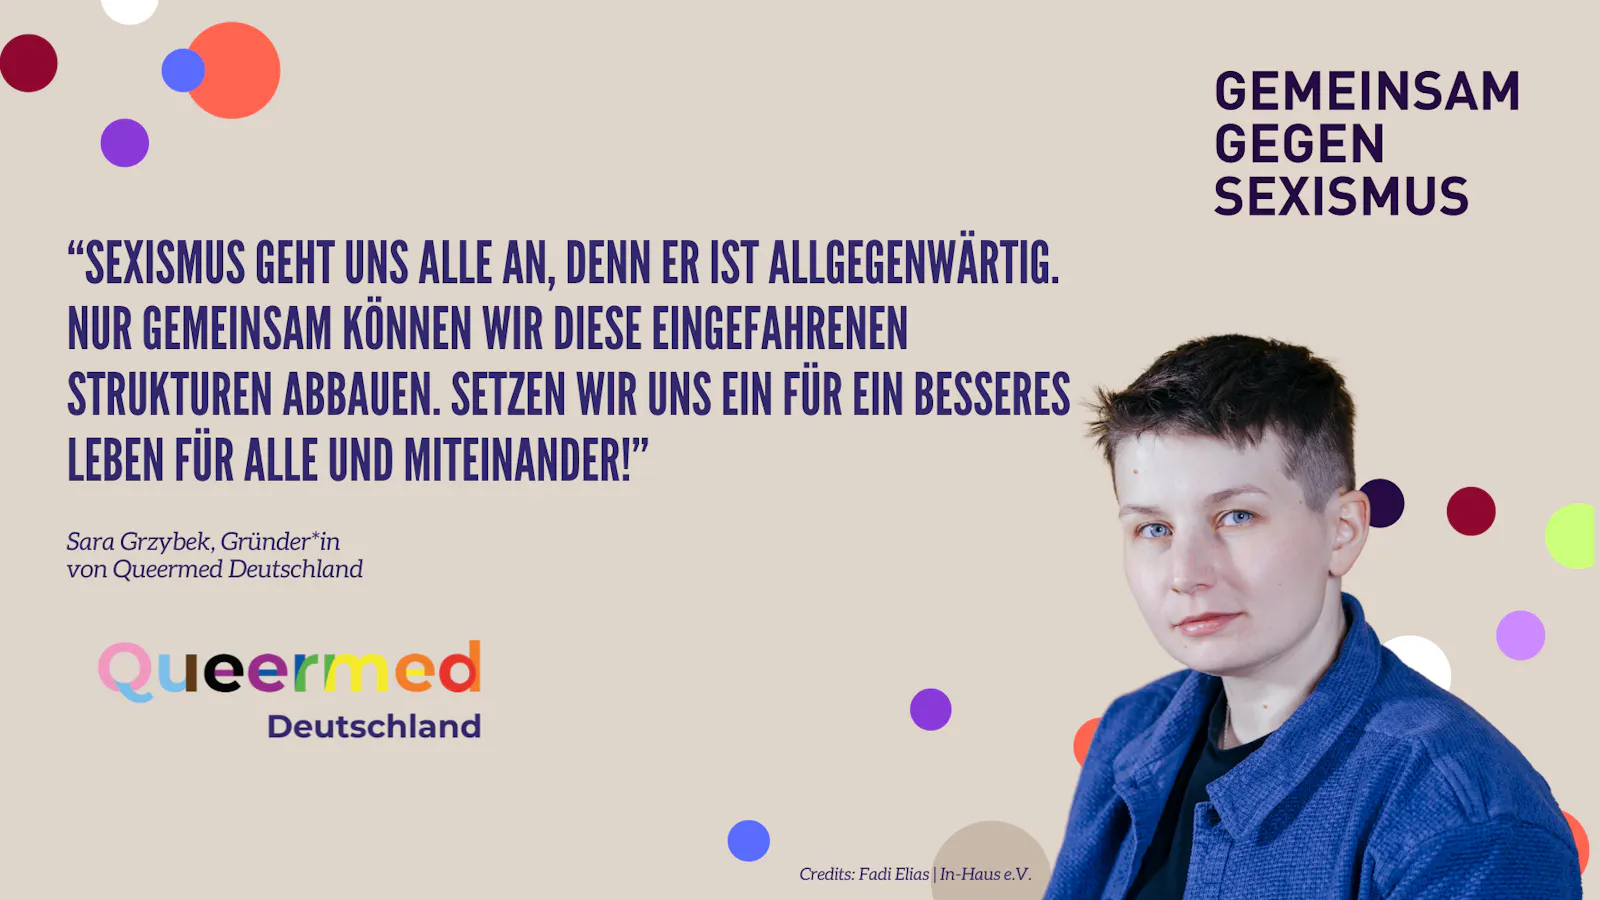 Ein Zitatbild mit Queermed Gründer*in Sara Grzybek, da Queermed nun Teil vom Bündnis "Gemeinsam gegen Sexismus" ist.